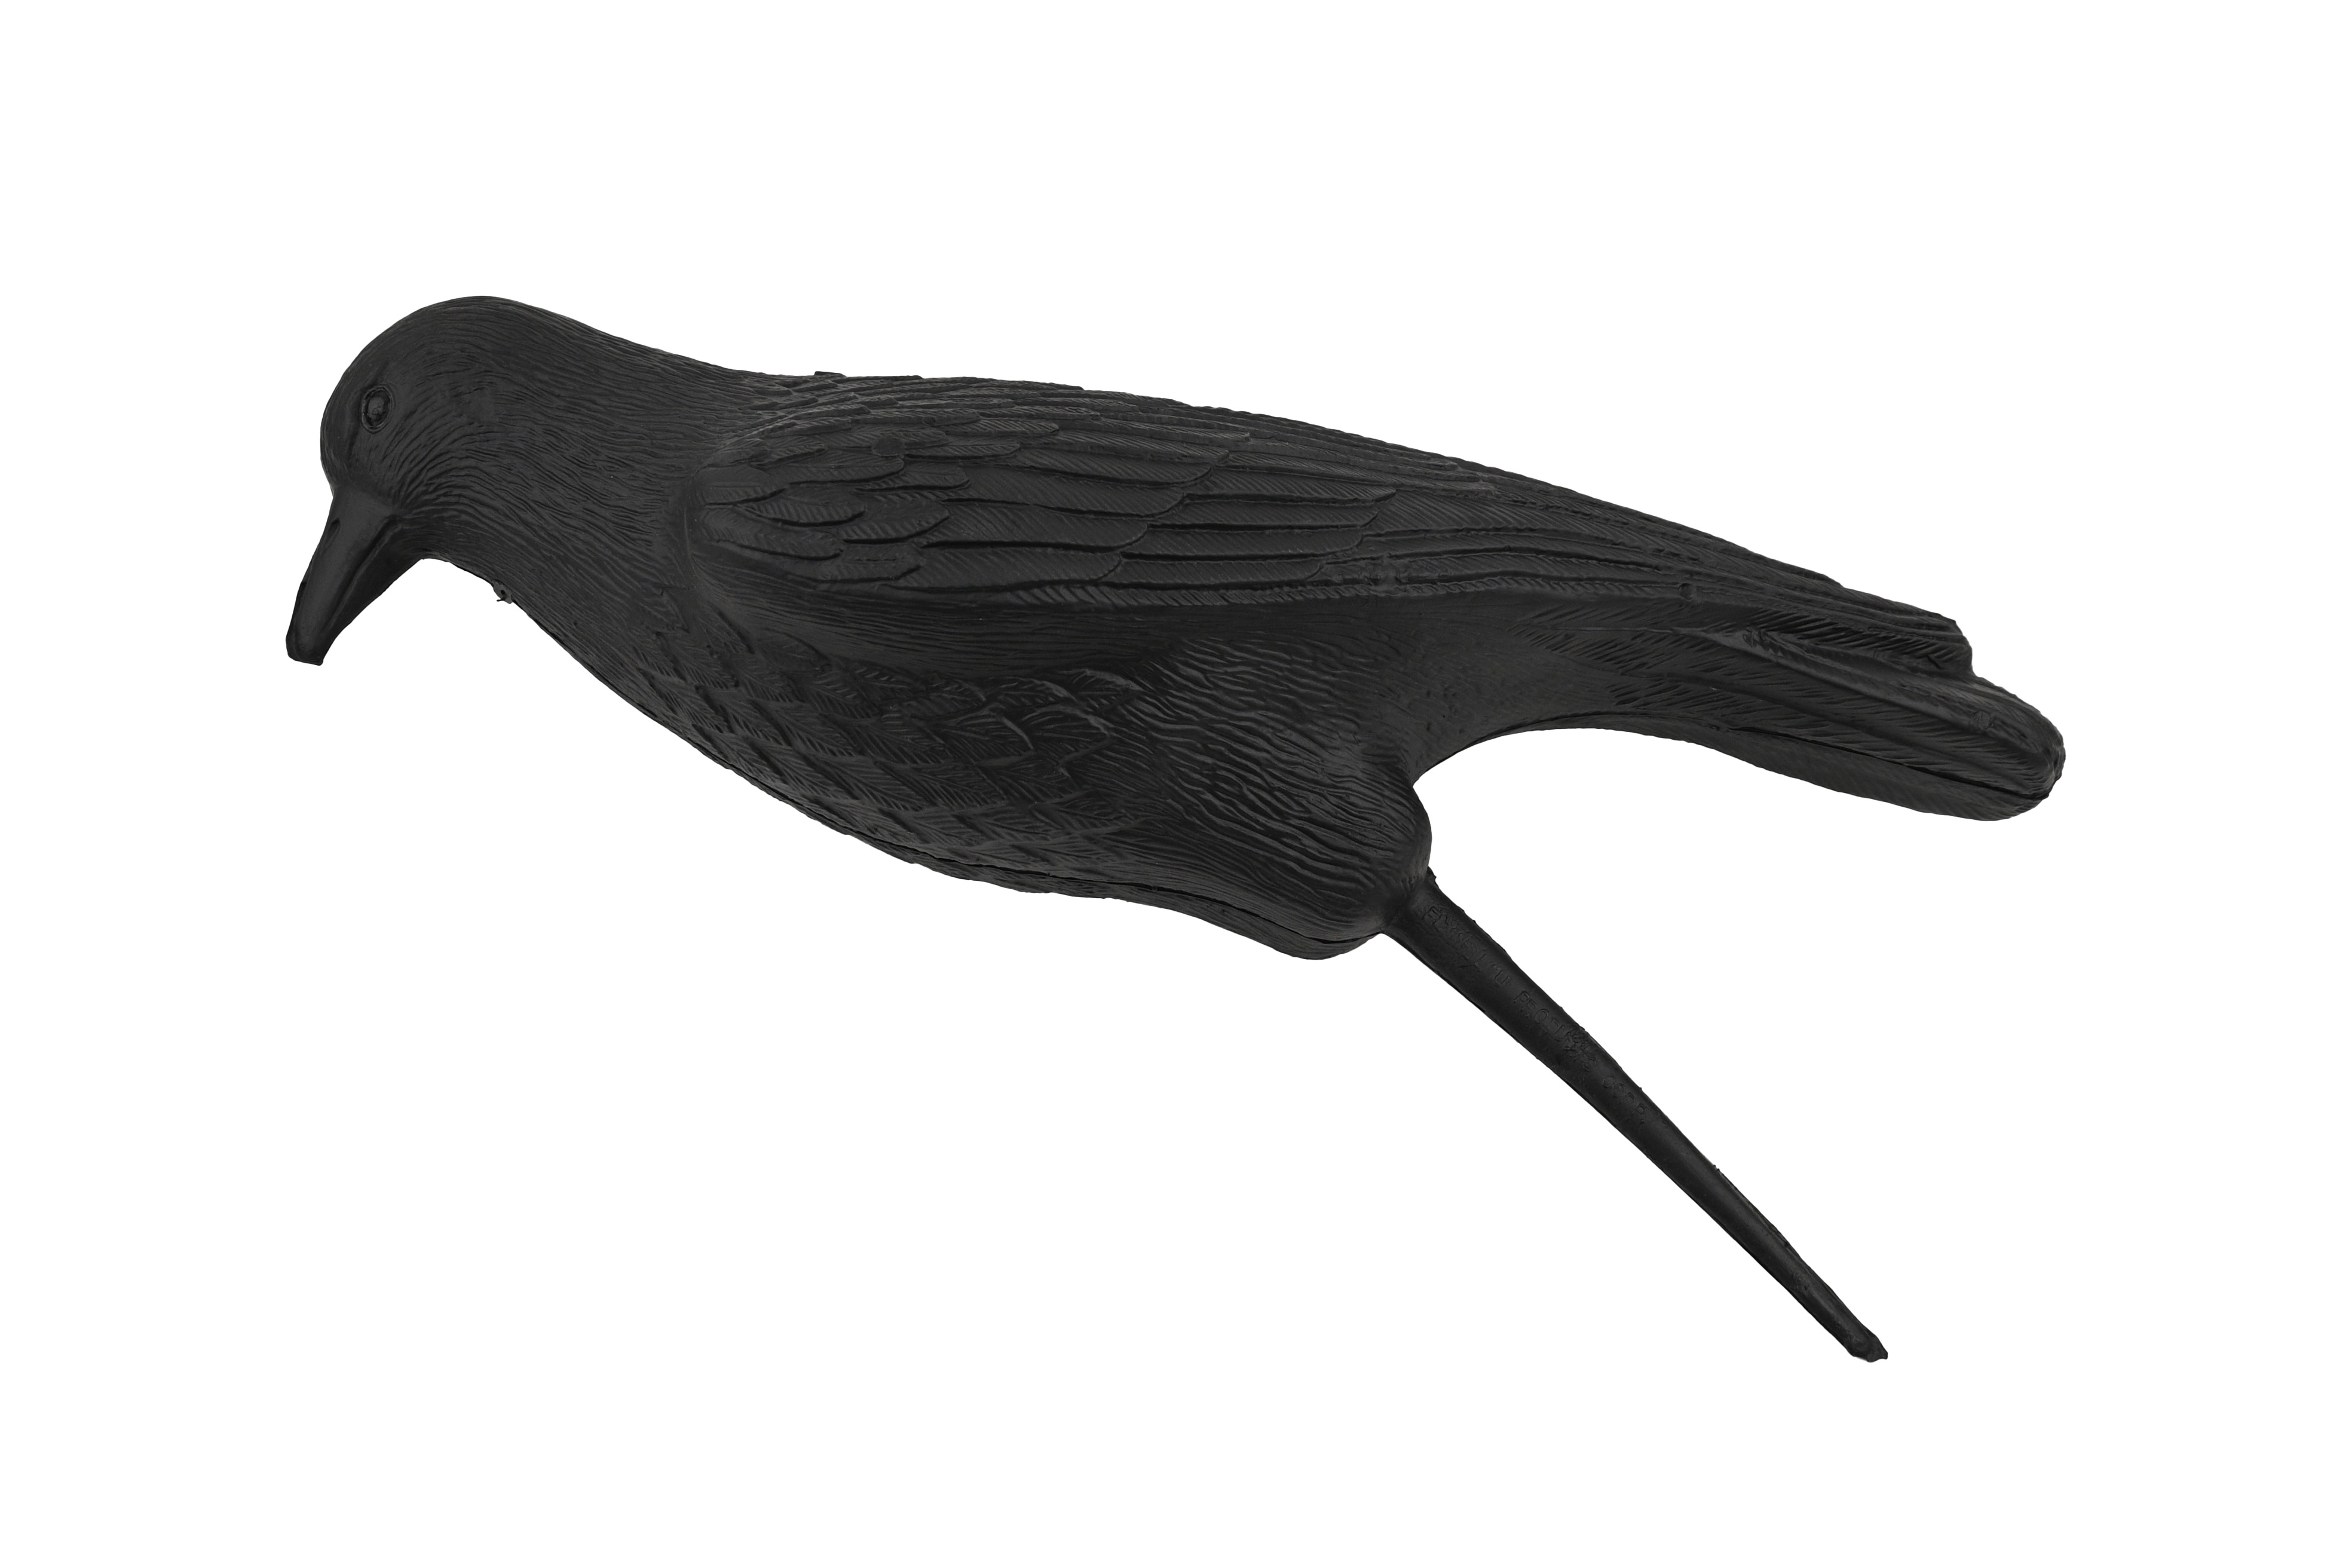 Подсадная ворона Flambeau Crow Decoy